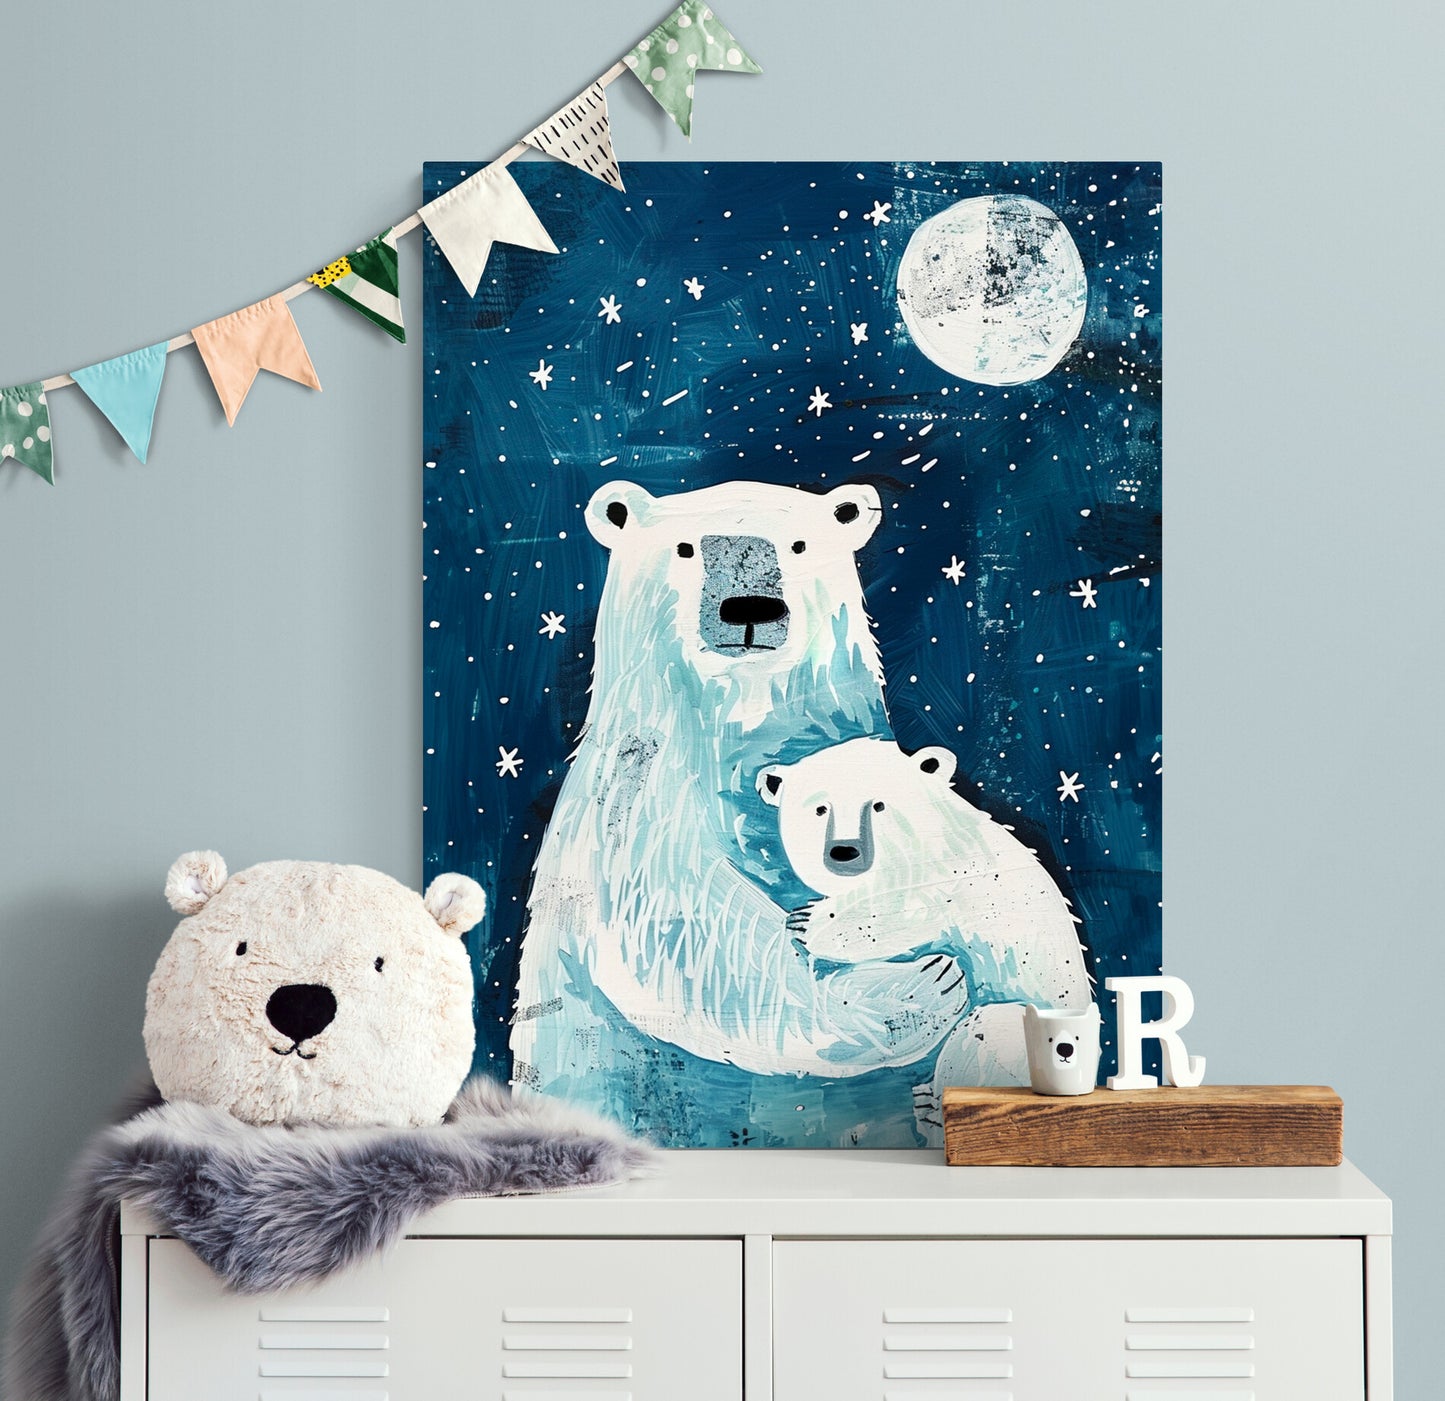 Peinture de deux ours polaires sous un ciel étoilé et une lune, exposée dans une chambre d'enfant décorée de guirlandes et un ours en peluche.